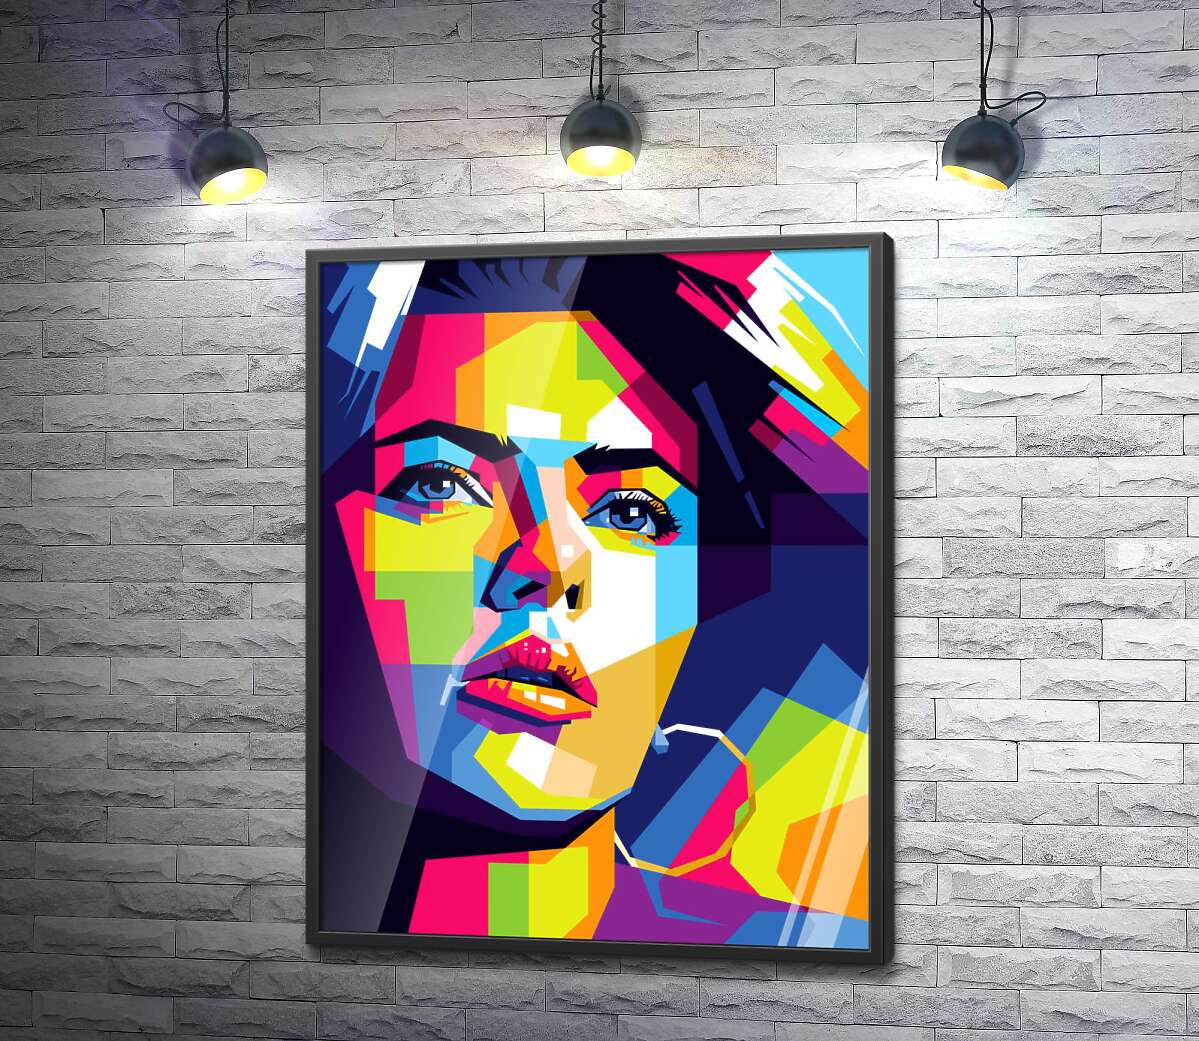 постер Яркость красок портрета Скарлетт Йоханссон (Scarlett Johansson)